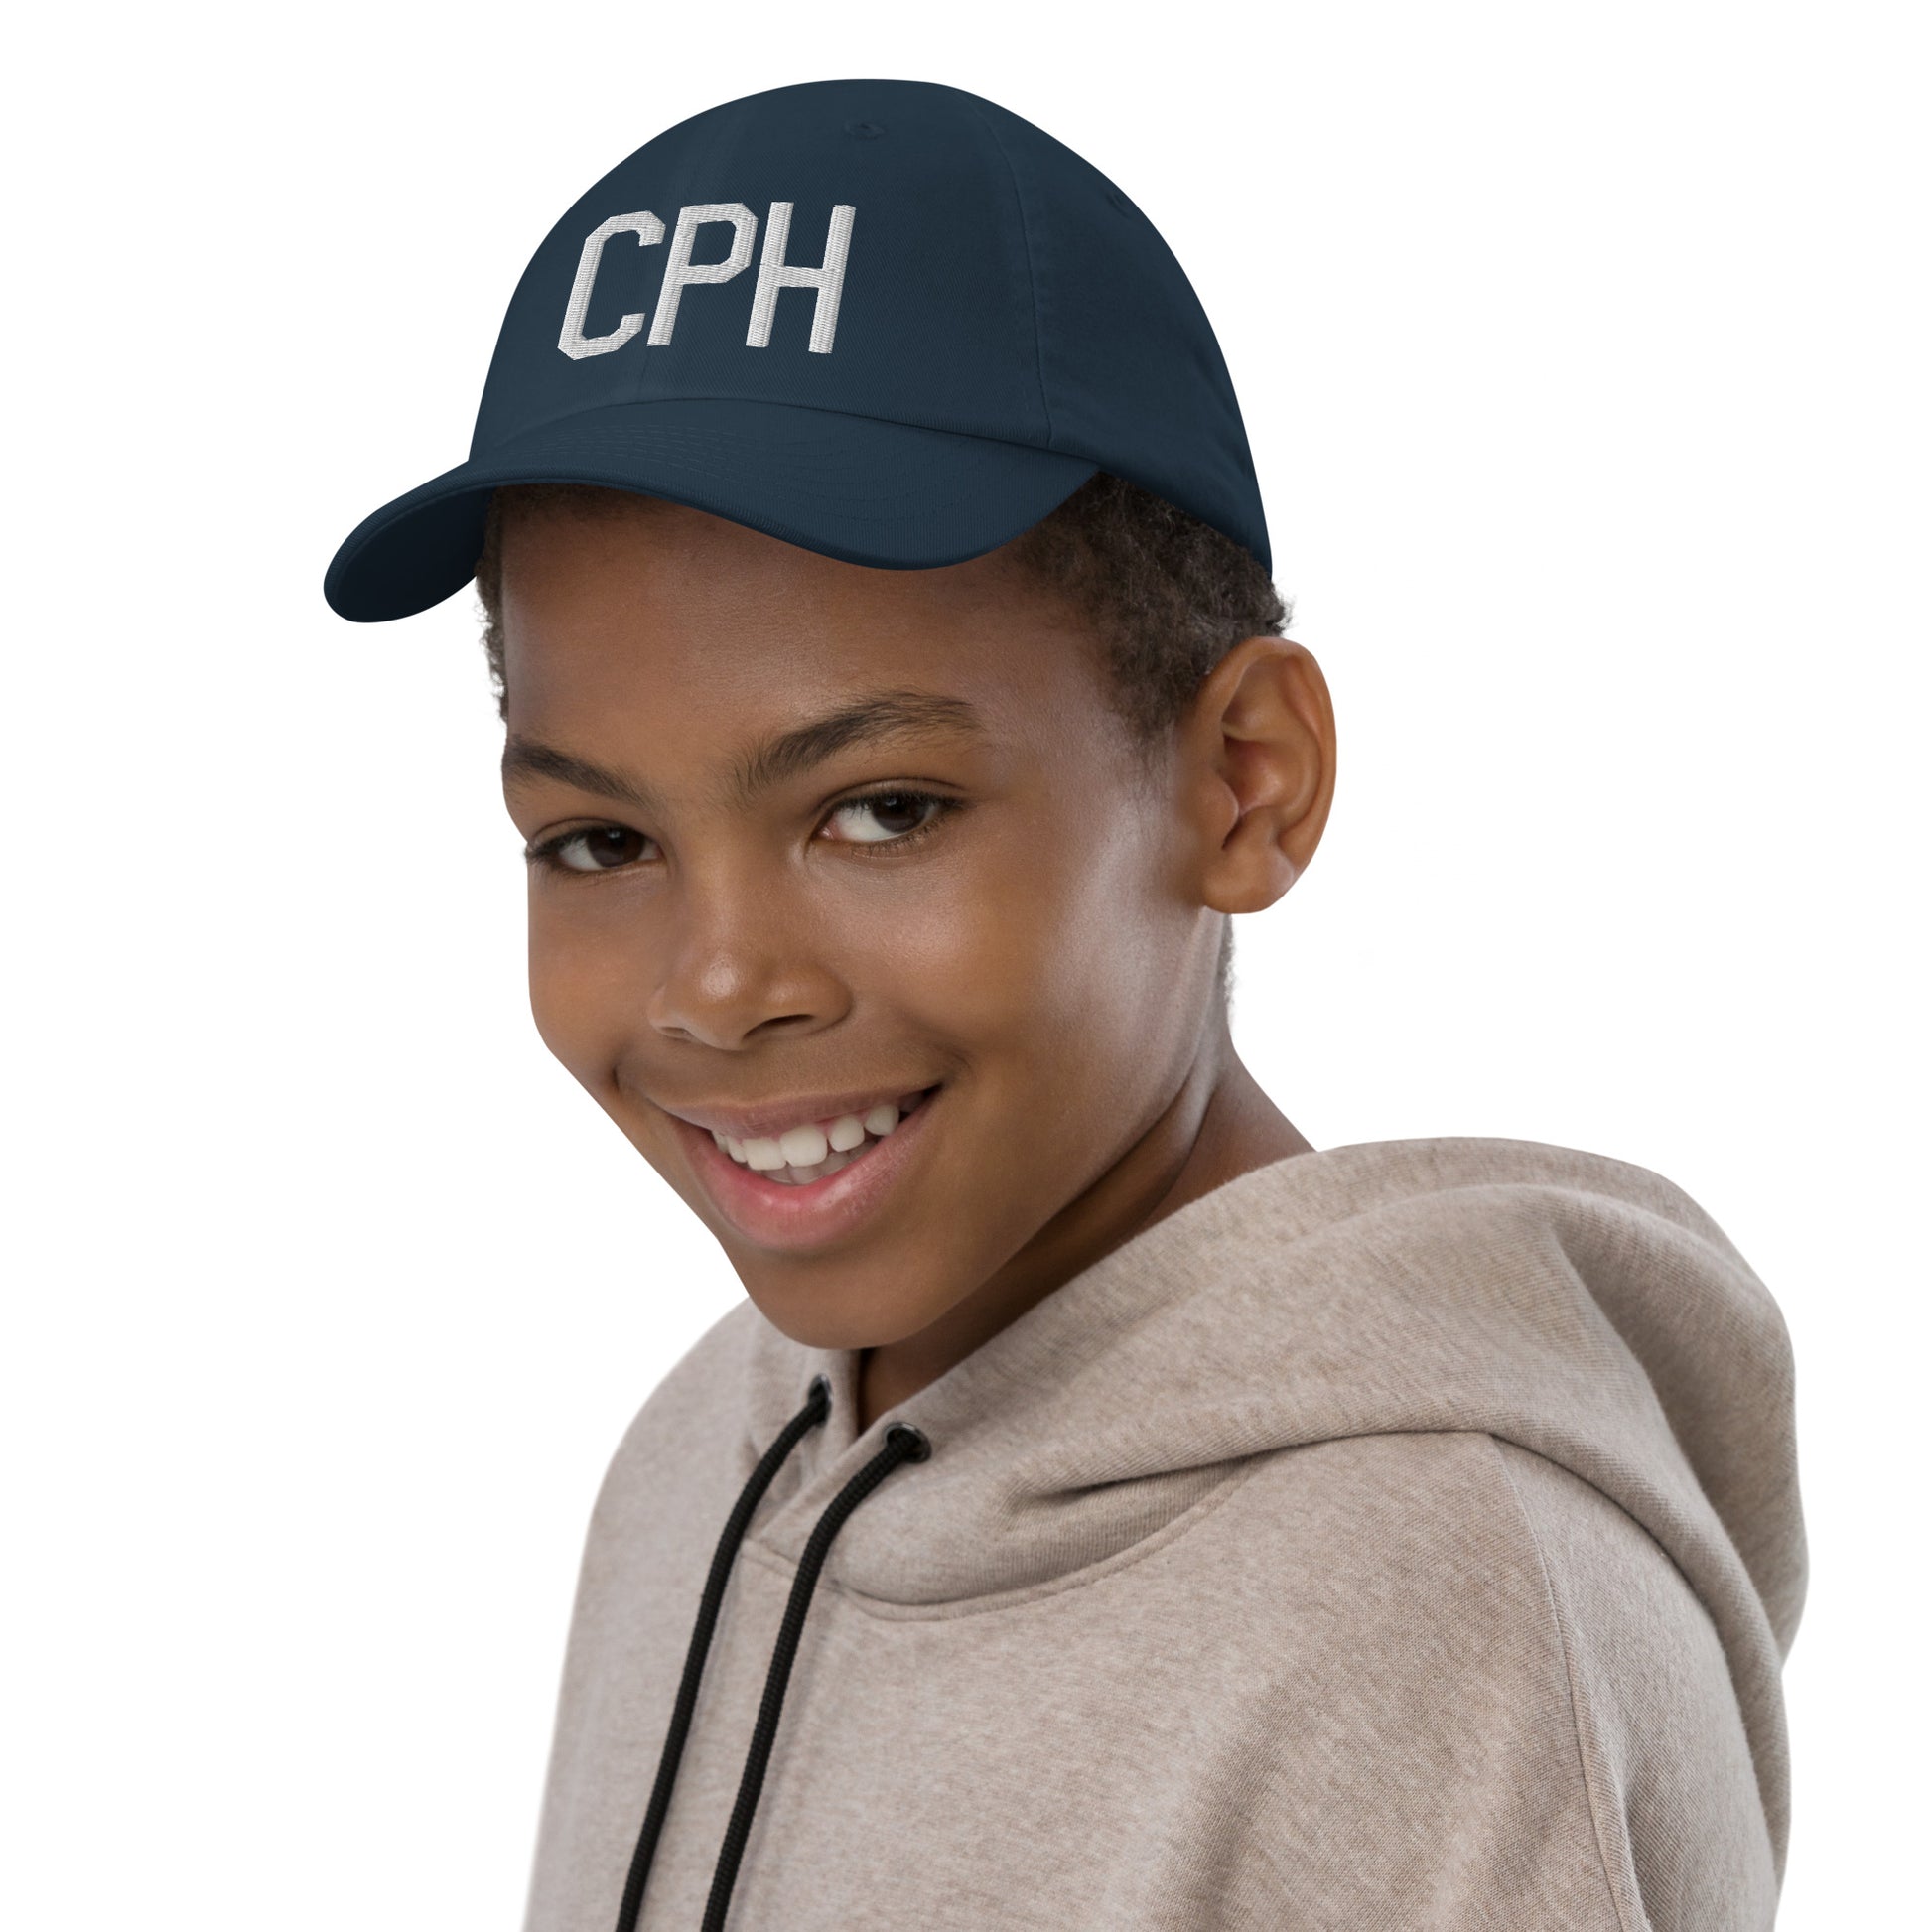 Airport Code Kid's Baseball Cap - White • CPH Copenhagen • YHM Designs - Image 03